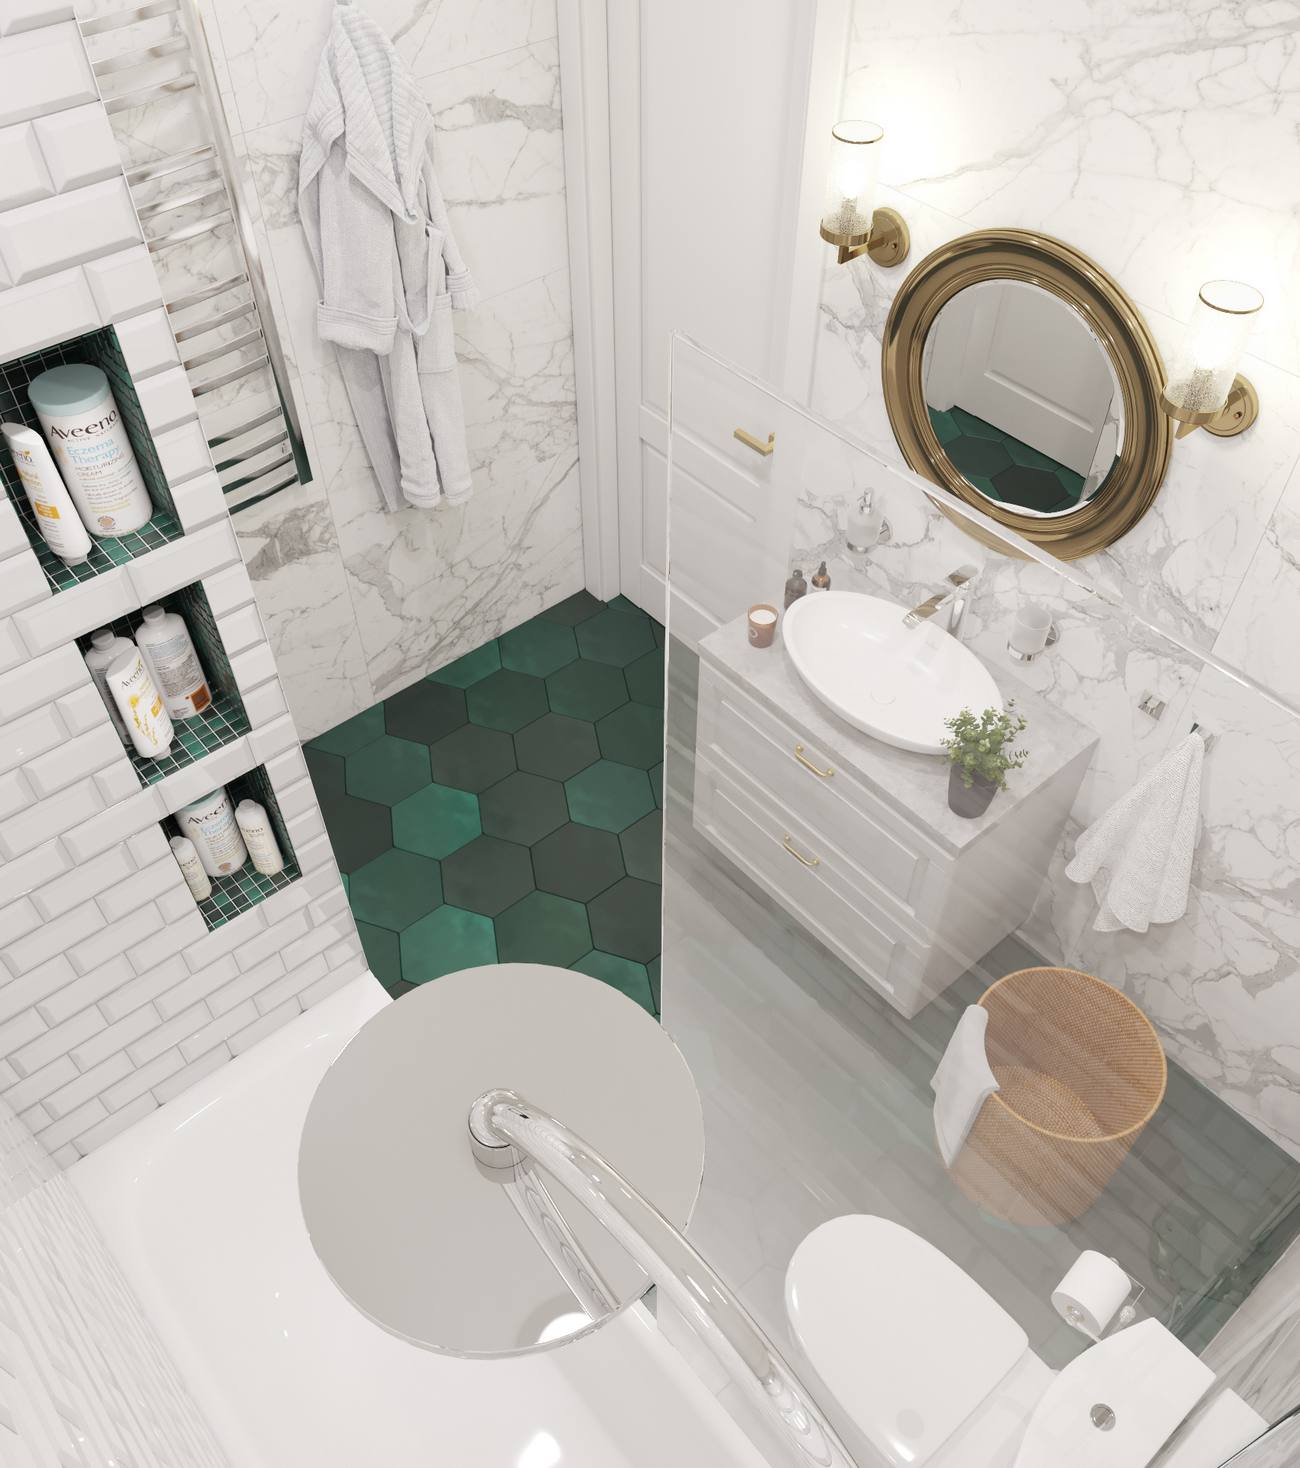 Đây là hình ảnh phòng tắm được chụp từ trên cao, bạn có thể dễ dàng nhận thấy sàn nhà lát gạch xanh ngọc lục bảo kiểu hình lục giác nổi bật trên nền trắng.